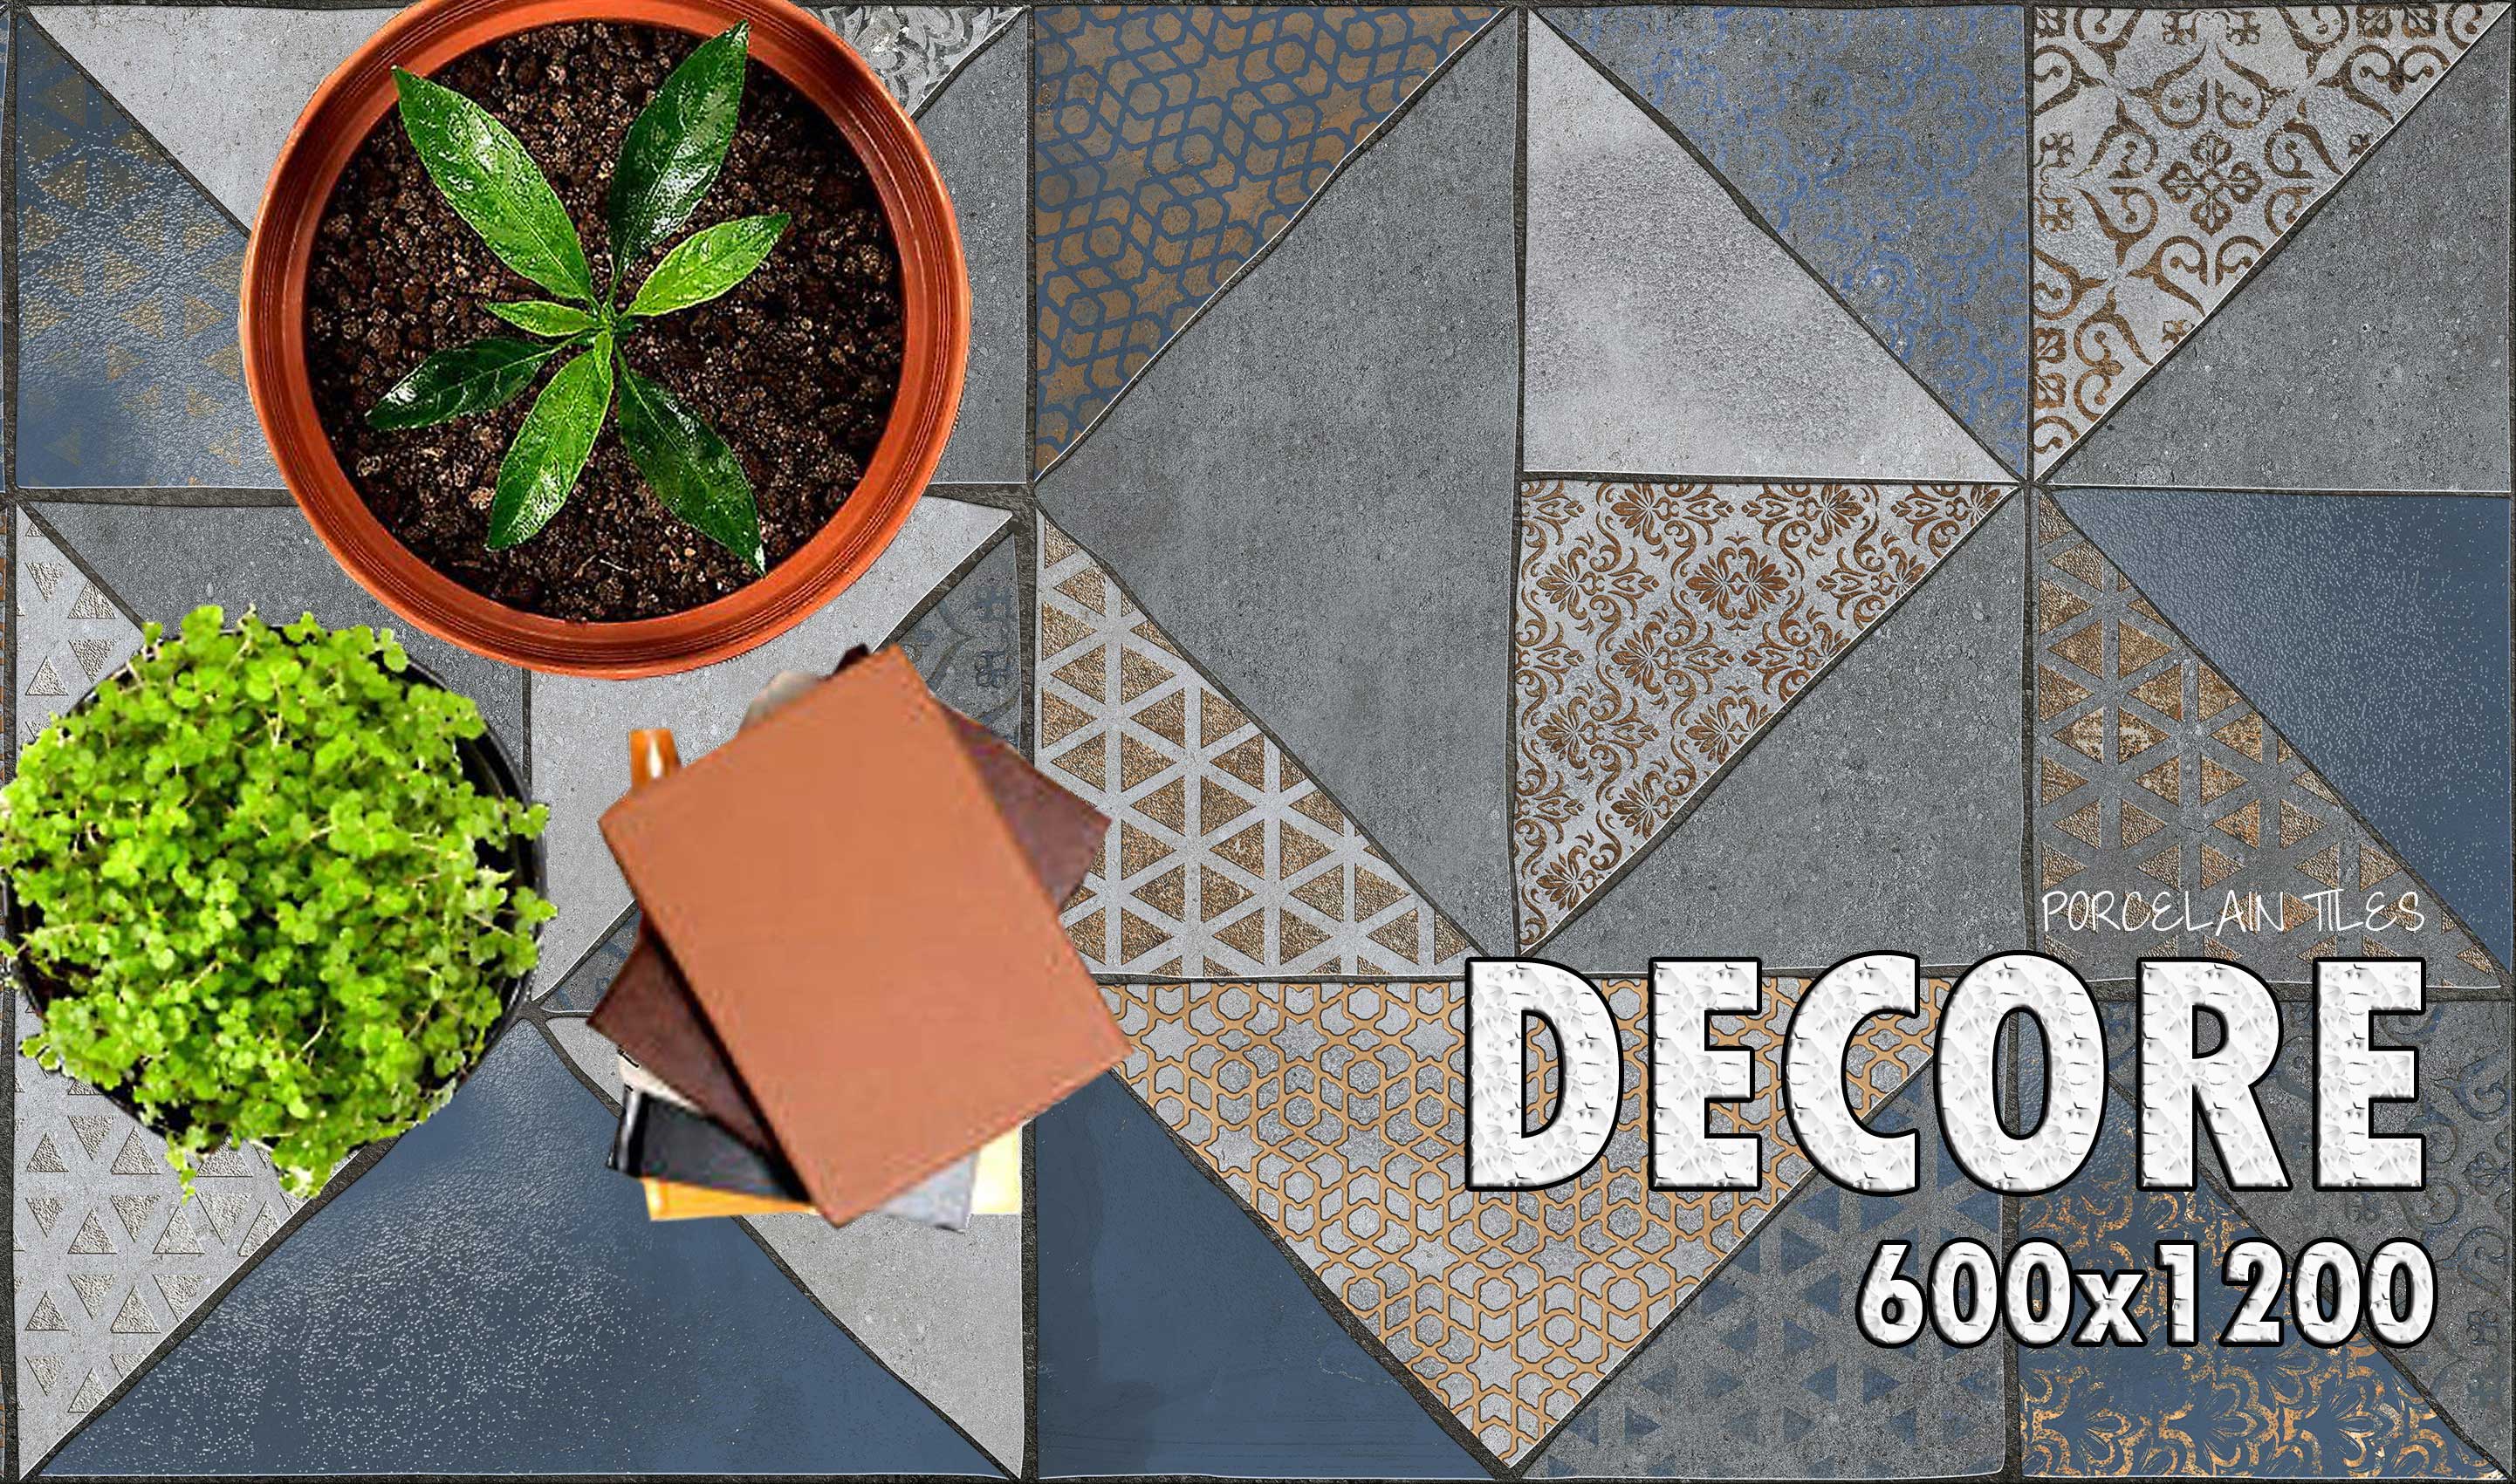 3d Decor Porcelain Floor Tiles Exporter In India Porcelain Tiles Floor Tiles Wall Tiles Tiles Manufacturer Exporter Supplier